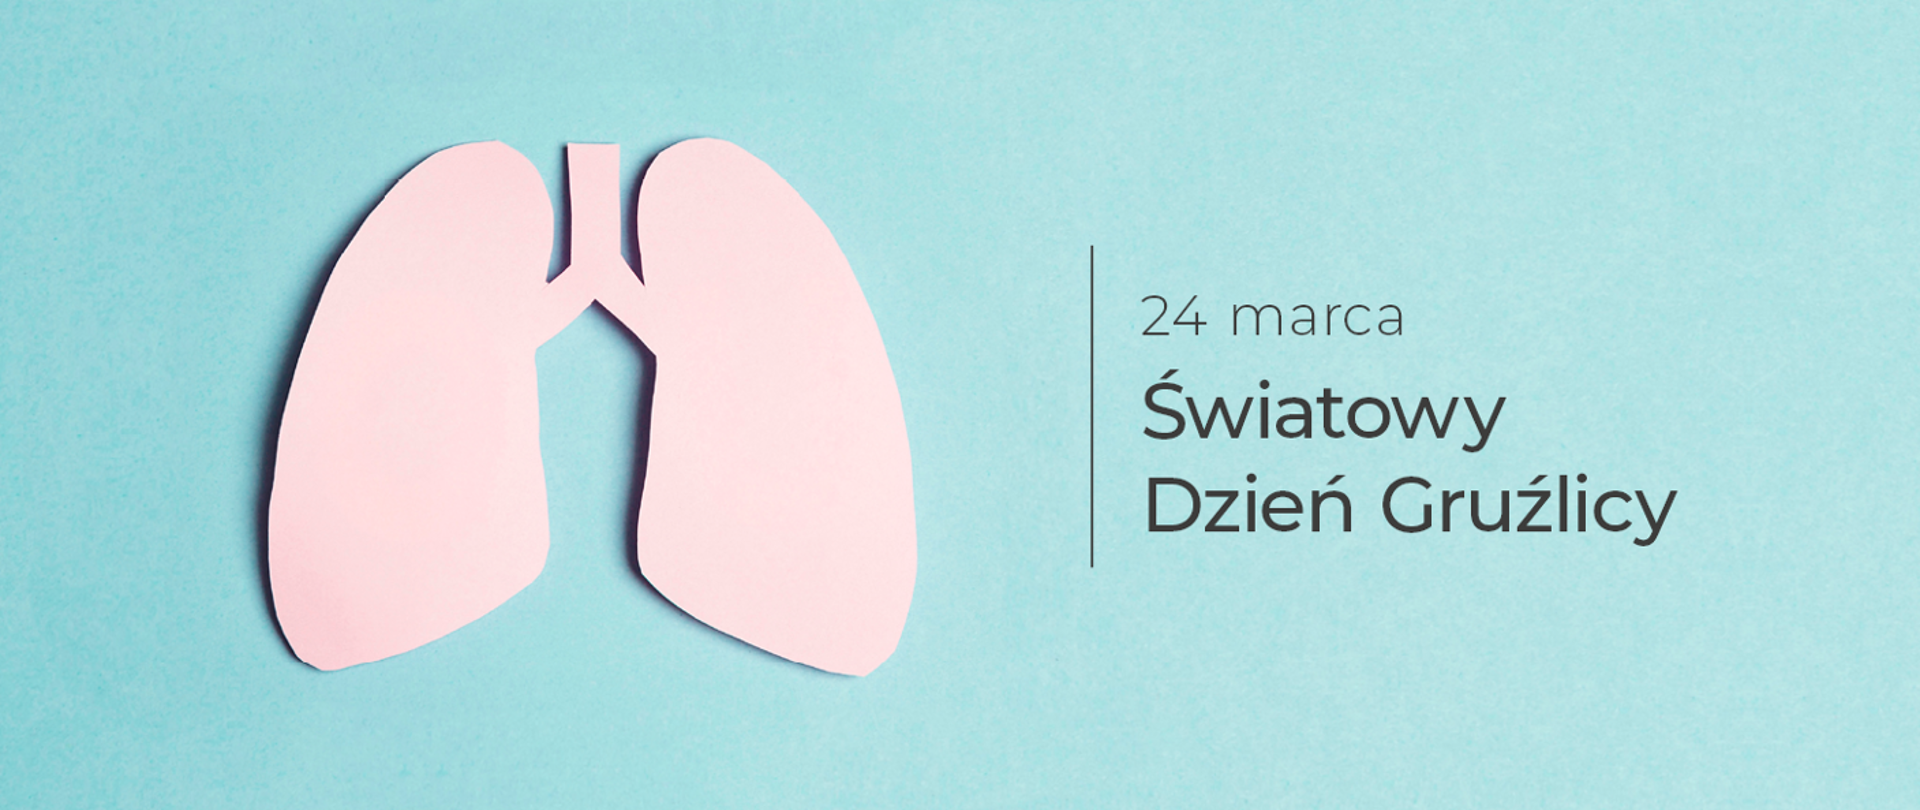 Grafika z zarysem kształtu płuc i napisem: 24 marca Światowy Dzień Gruźlicy